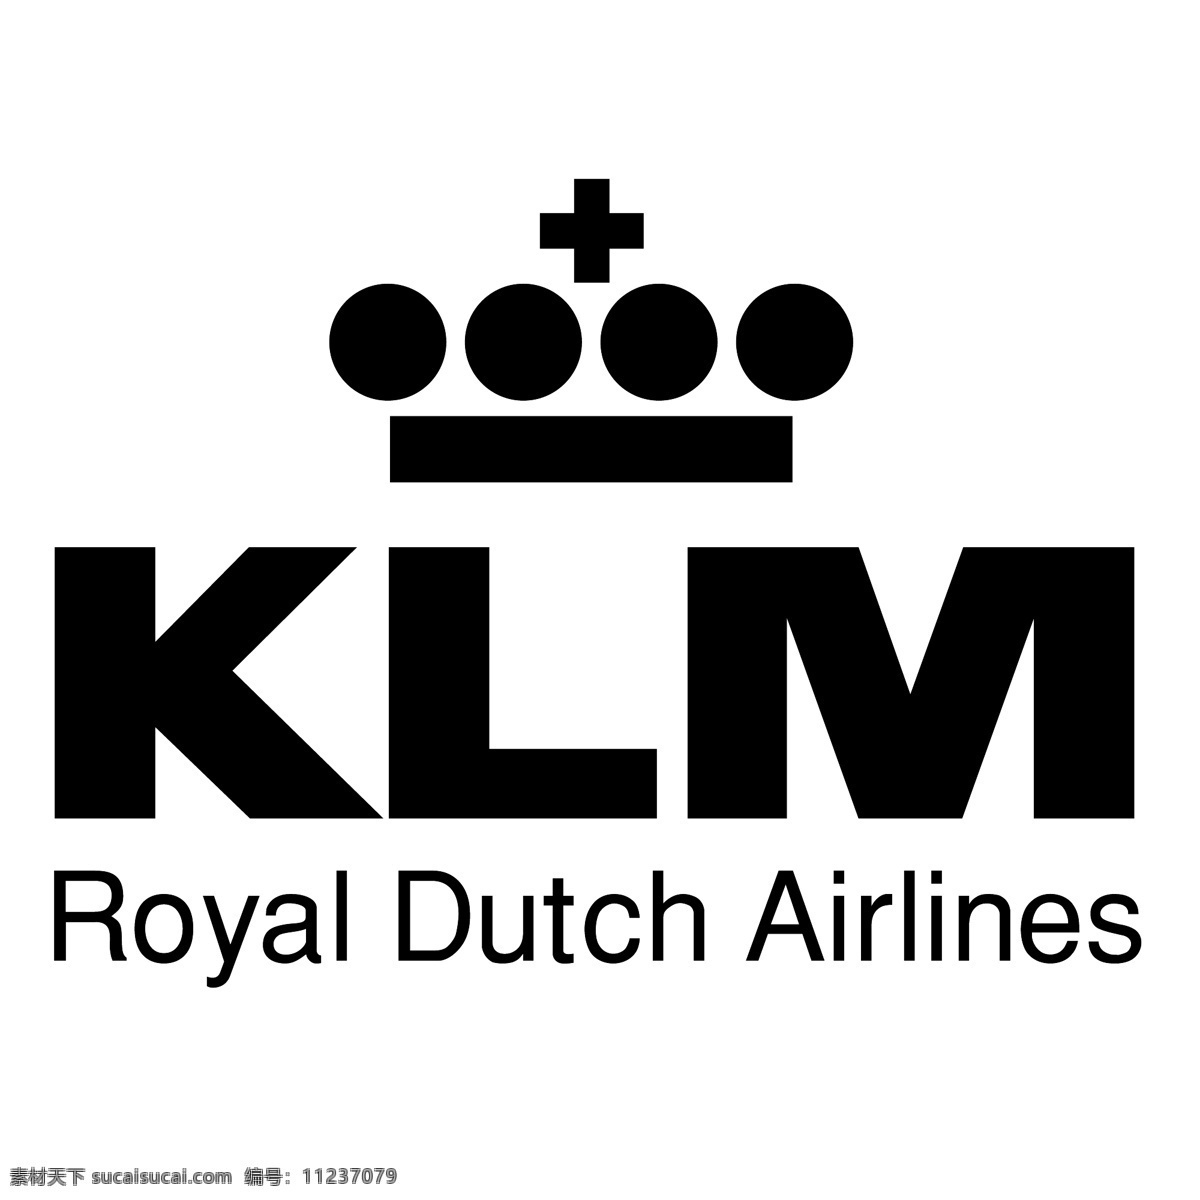 荷航1 荷兰 皇家 航空公司 标识 向量 向量klm 荷航标志矢量 矢量klm 荷航标志 荷兰航空公司 航空 矢量 klm logo 图标 荷兰klm 荷航klm